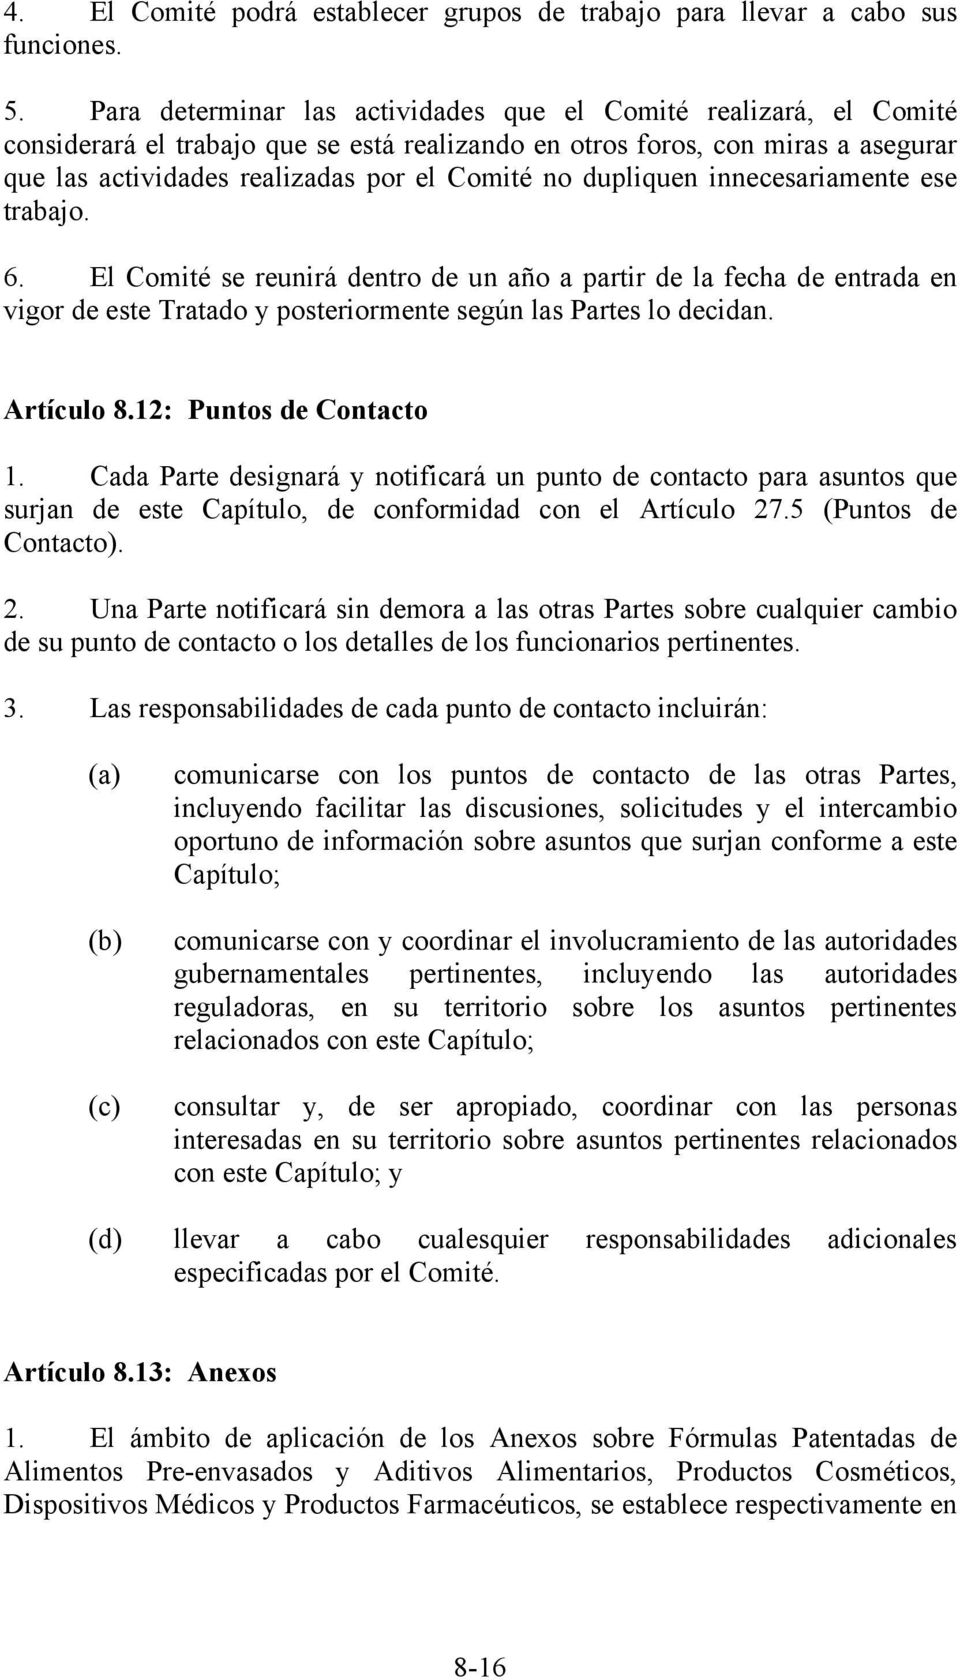 dupliquen innecesariamente ese trabajo. 6. El Comité se reunirá dentro de un año a partir de la fecha de entrada en vigor de este Tratado y posteriormente según las Partes lo decidan. Artículo 8.